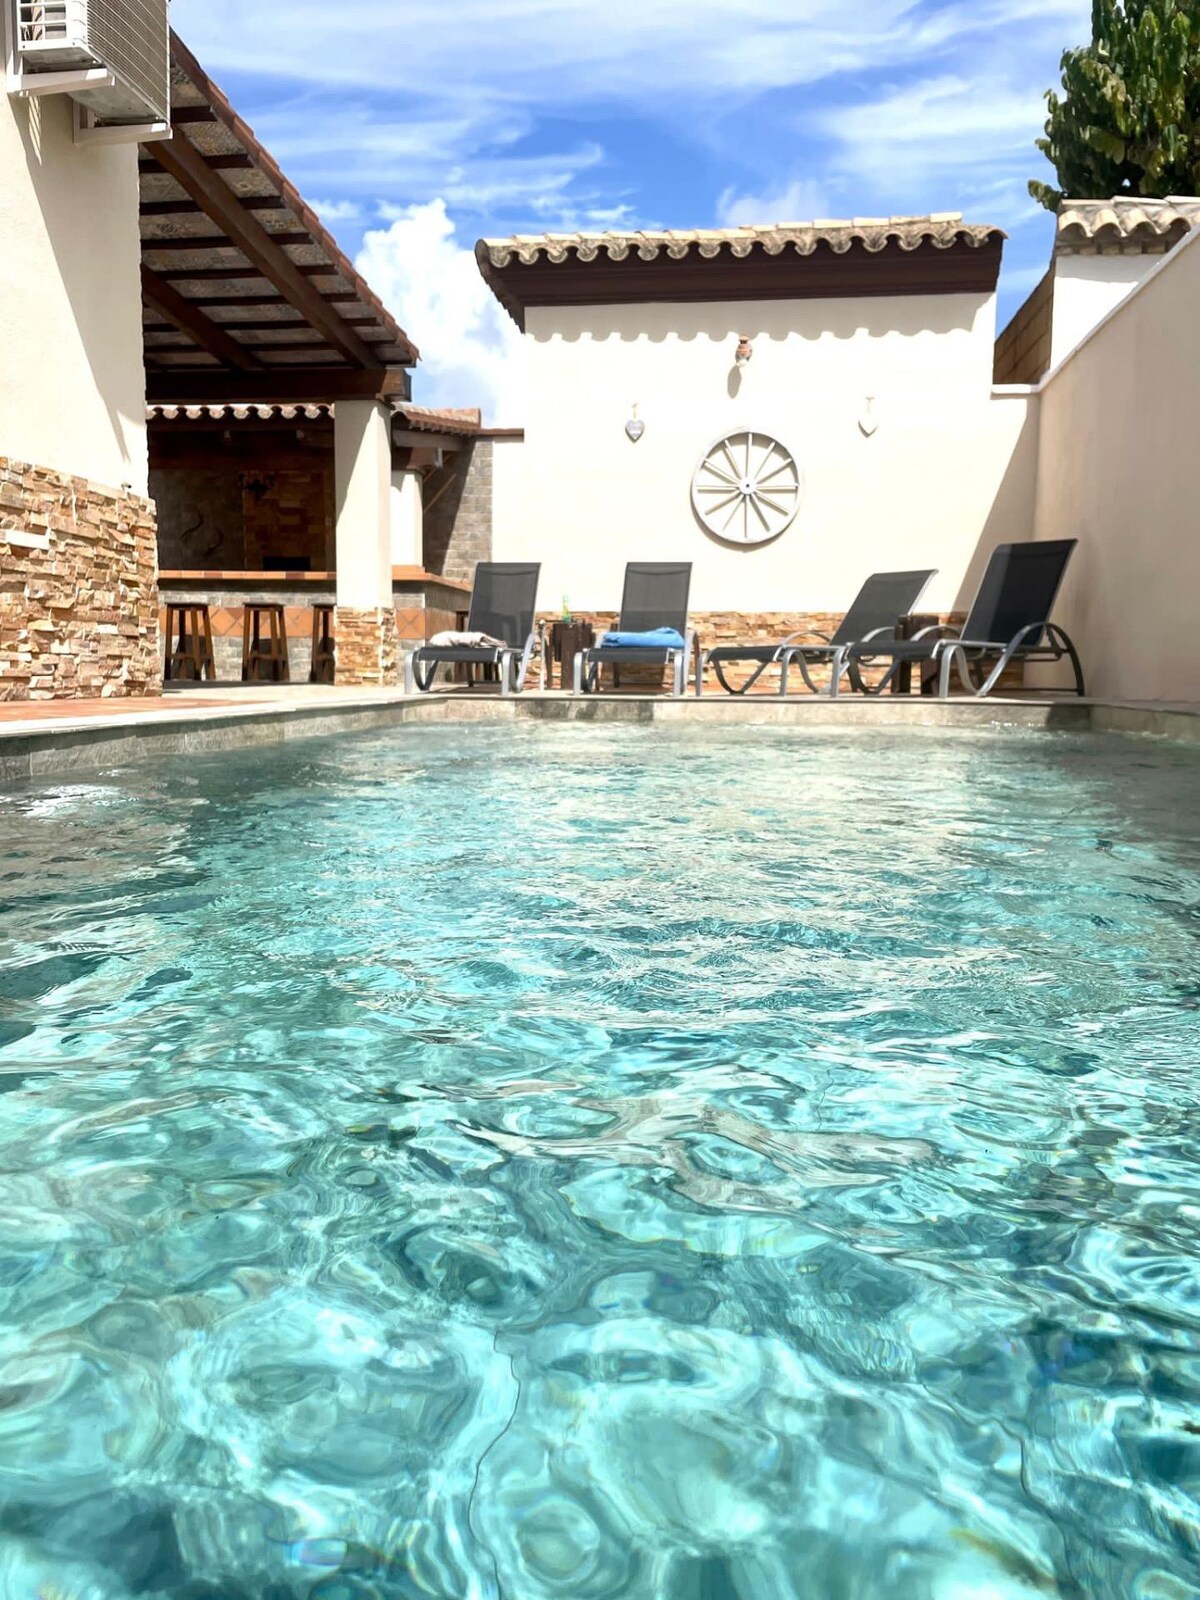 Villa Dos Amigos, with private pool.